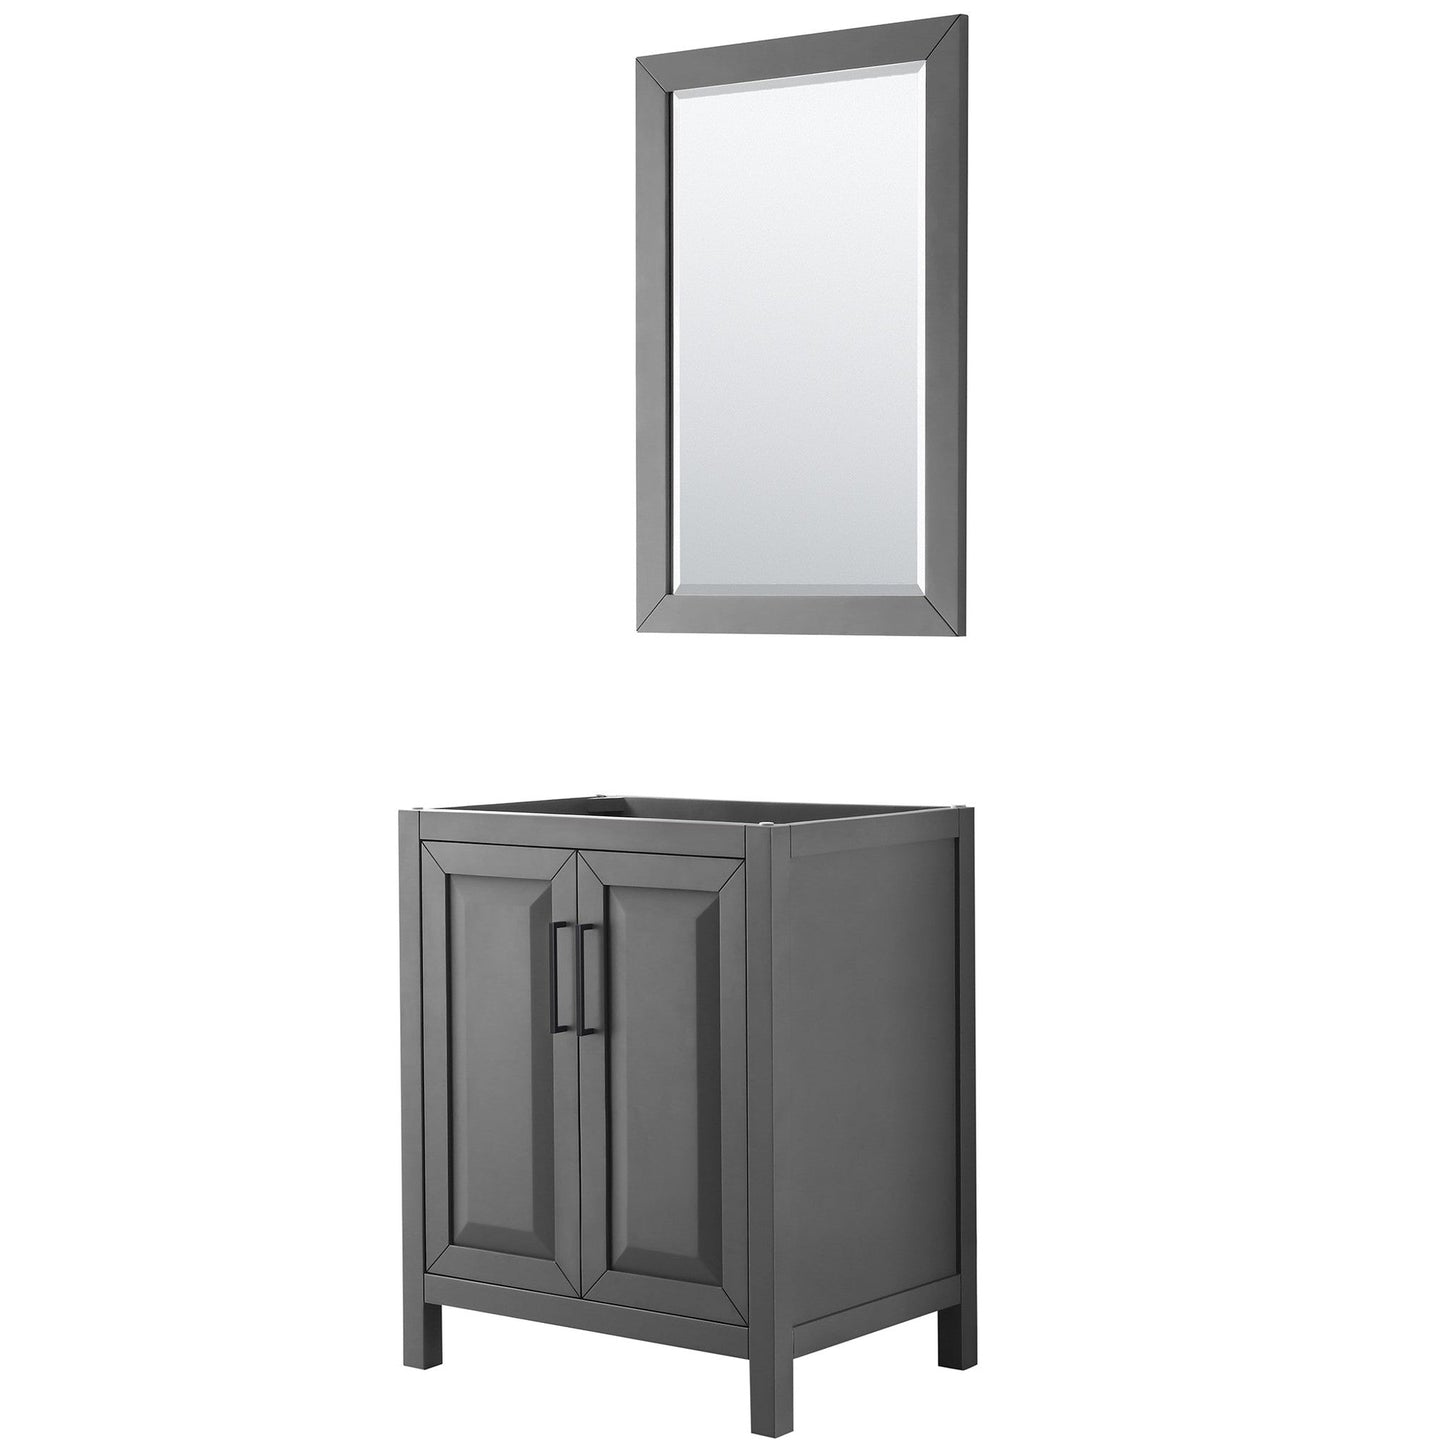 Daria 30" Single Bathroom Vanity in Dark Gray, No Countertop, No Sink, Matte Black Trim, 24" Mirror